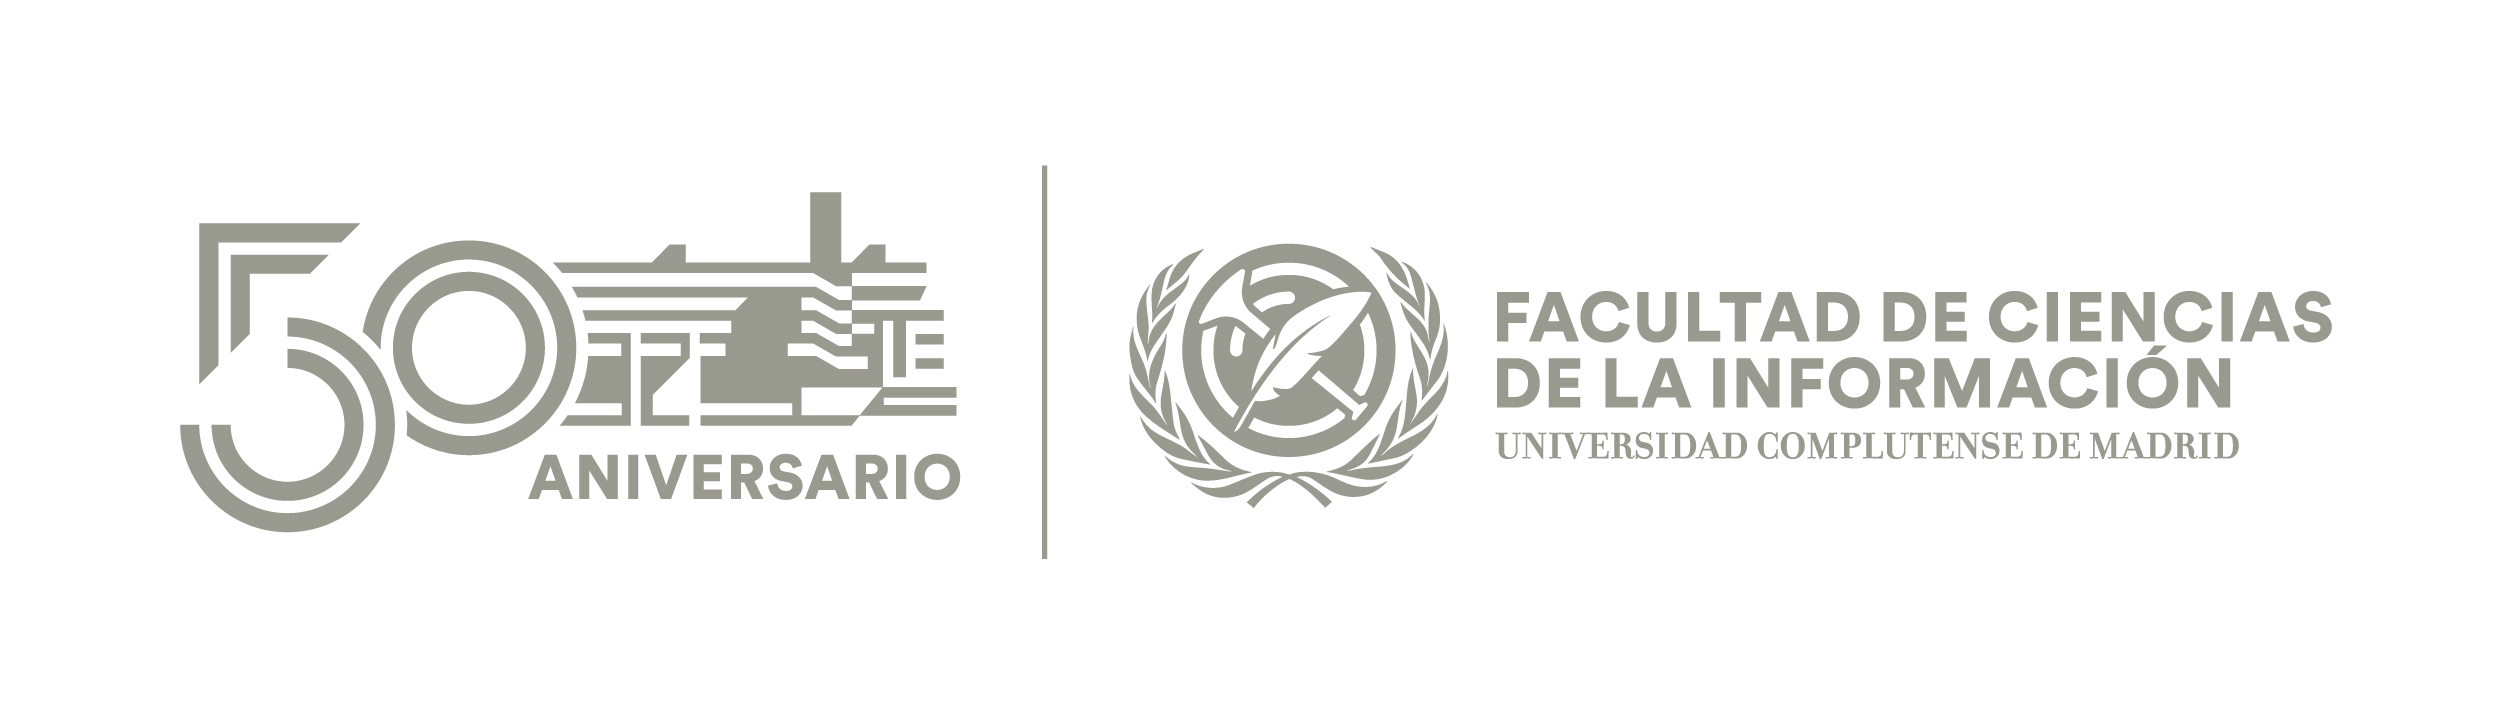 Logotipo Facultad de Ciencias de la Información y 50 aniversario